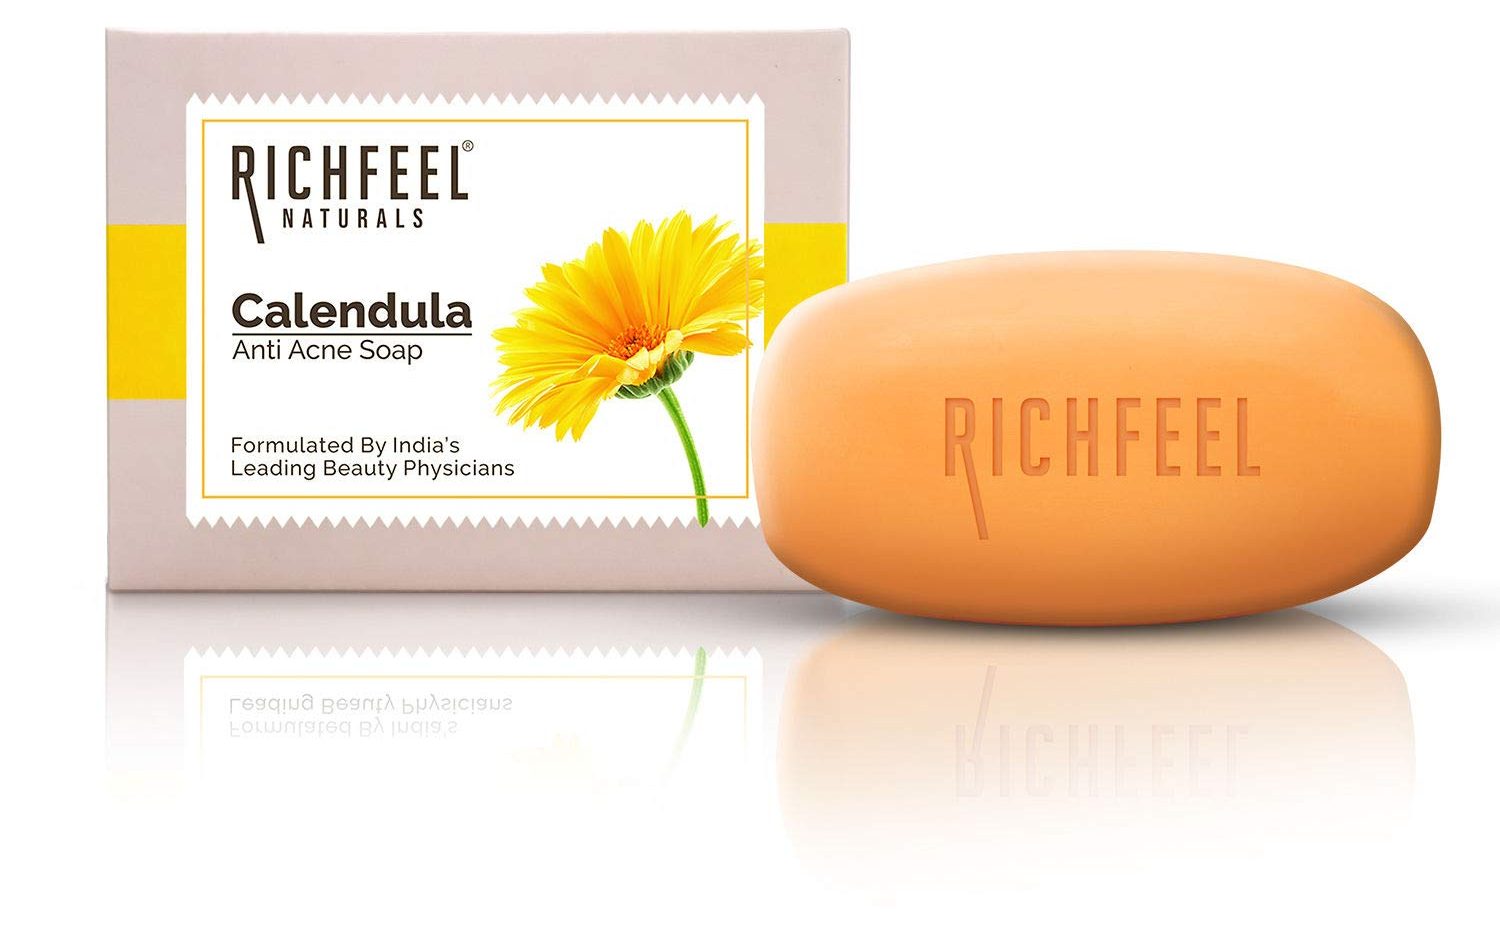 richfeel-calendula-anti-acne-soap